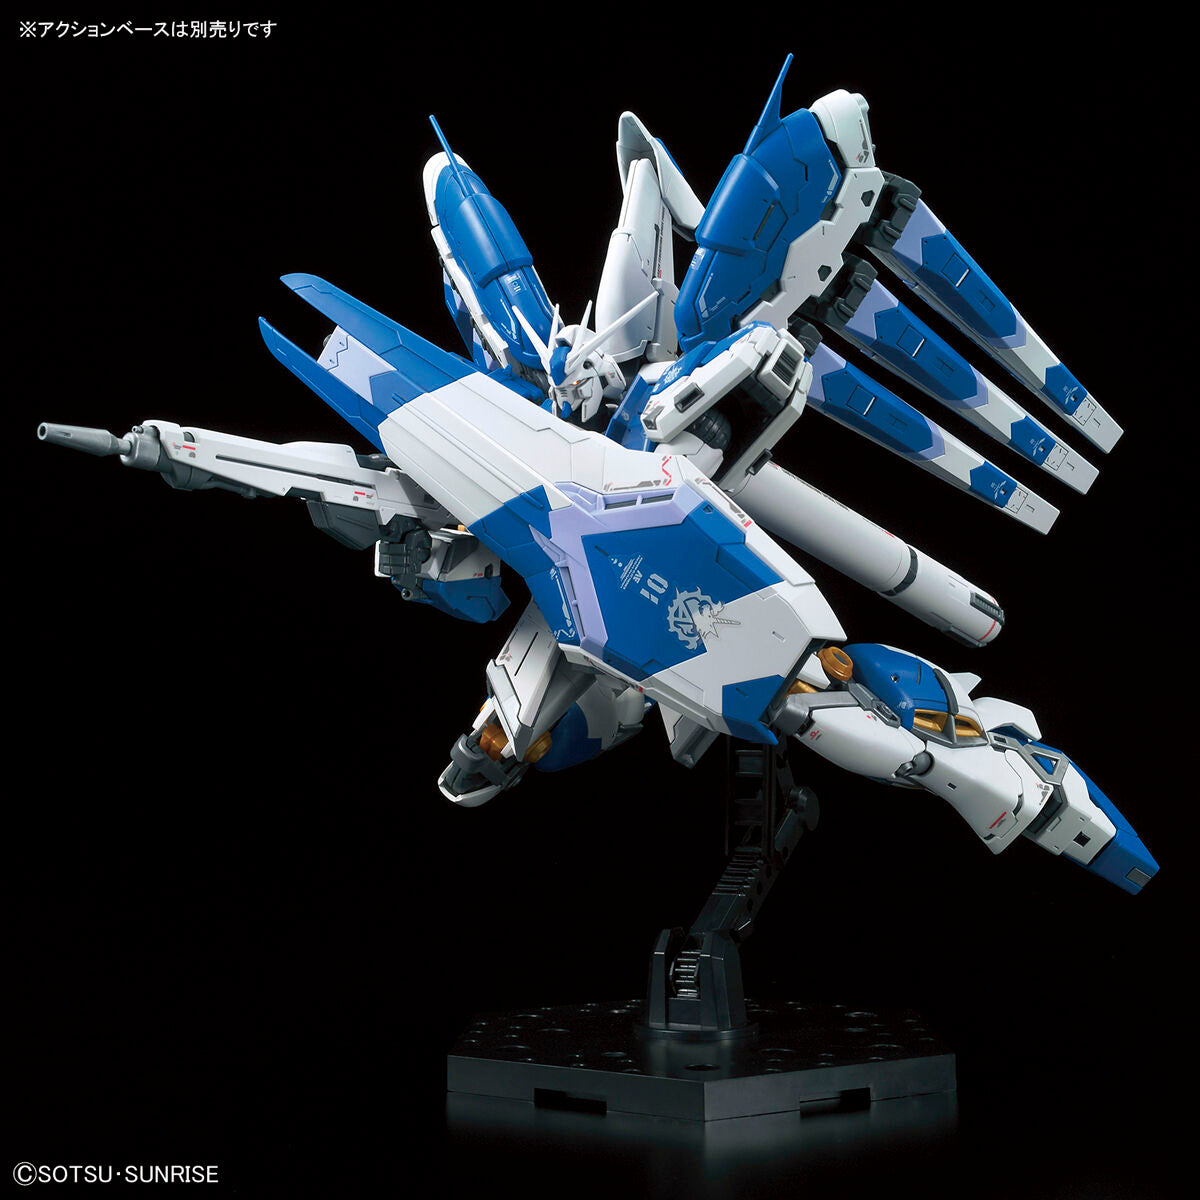 RG Hi-v Gundam